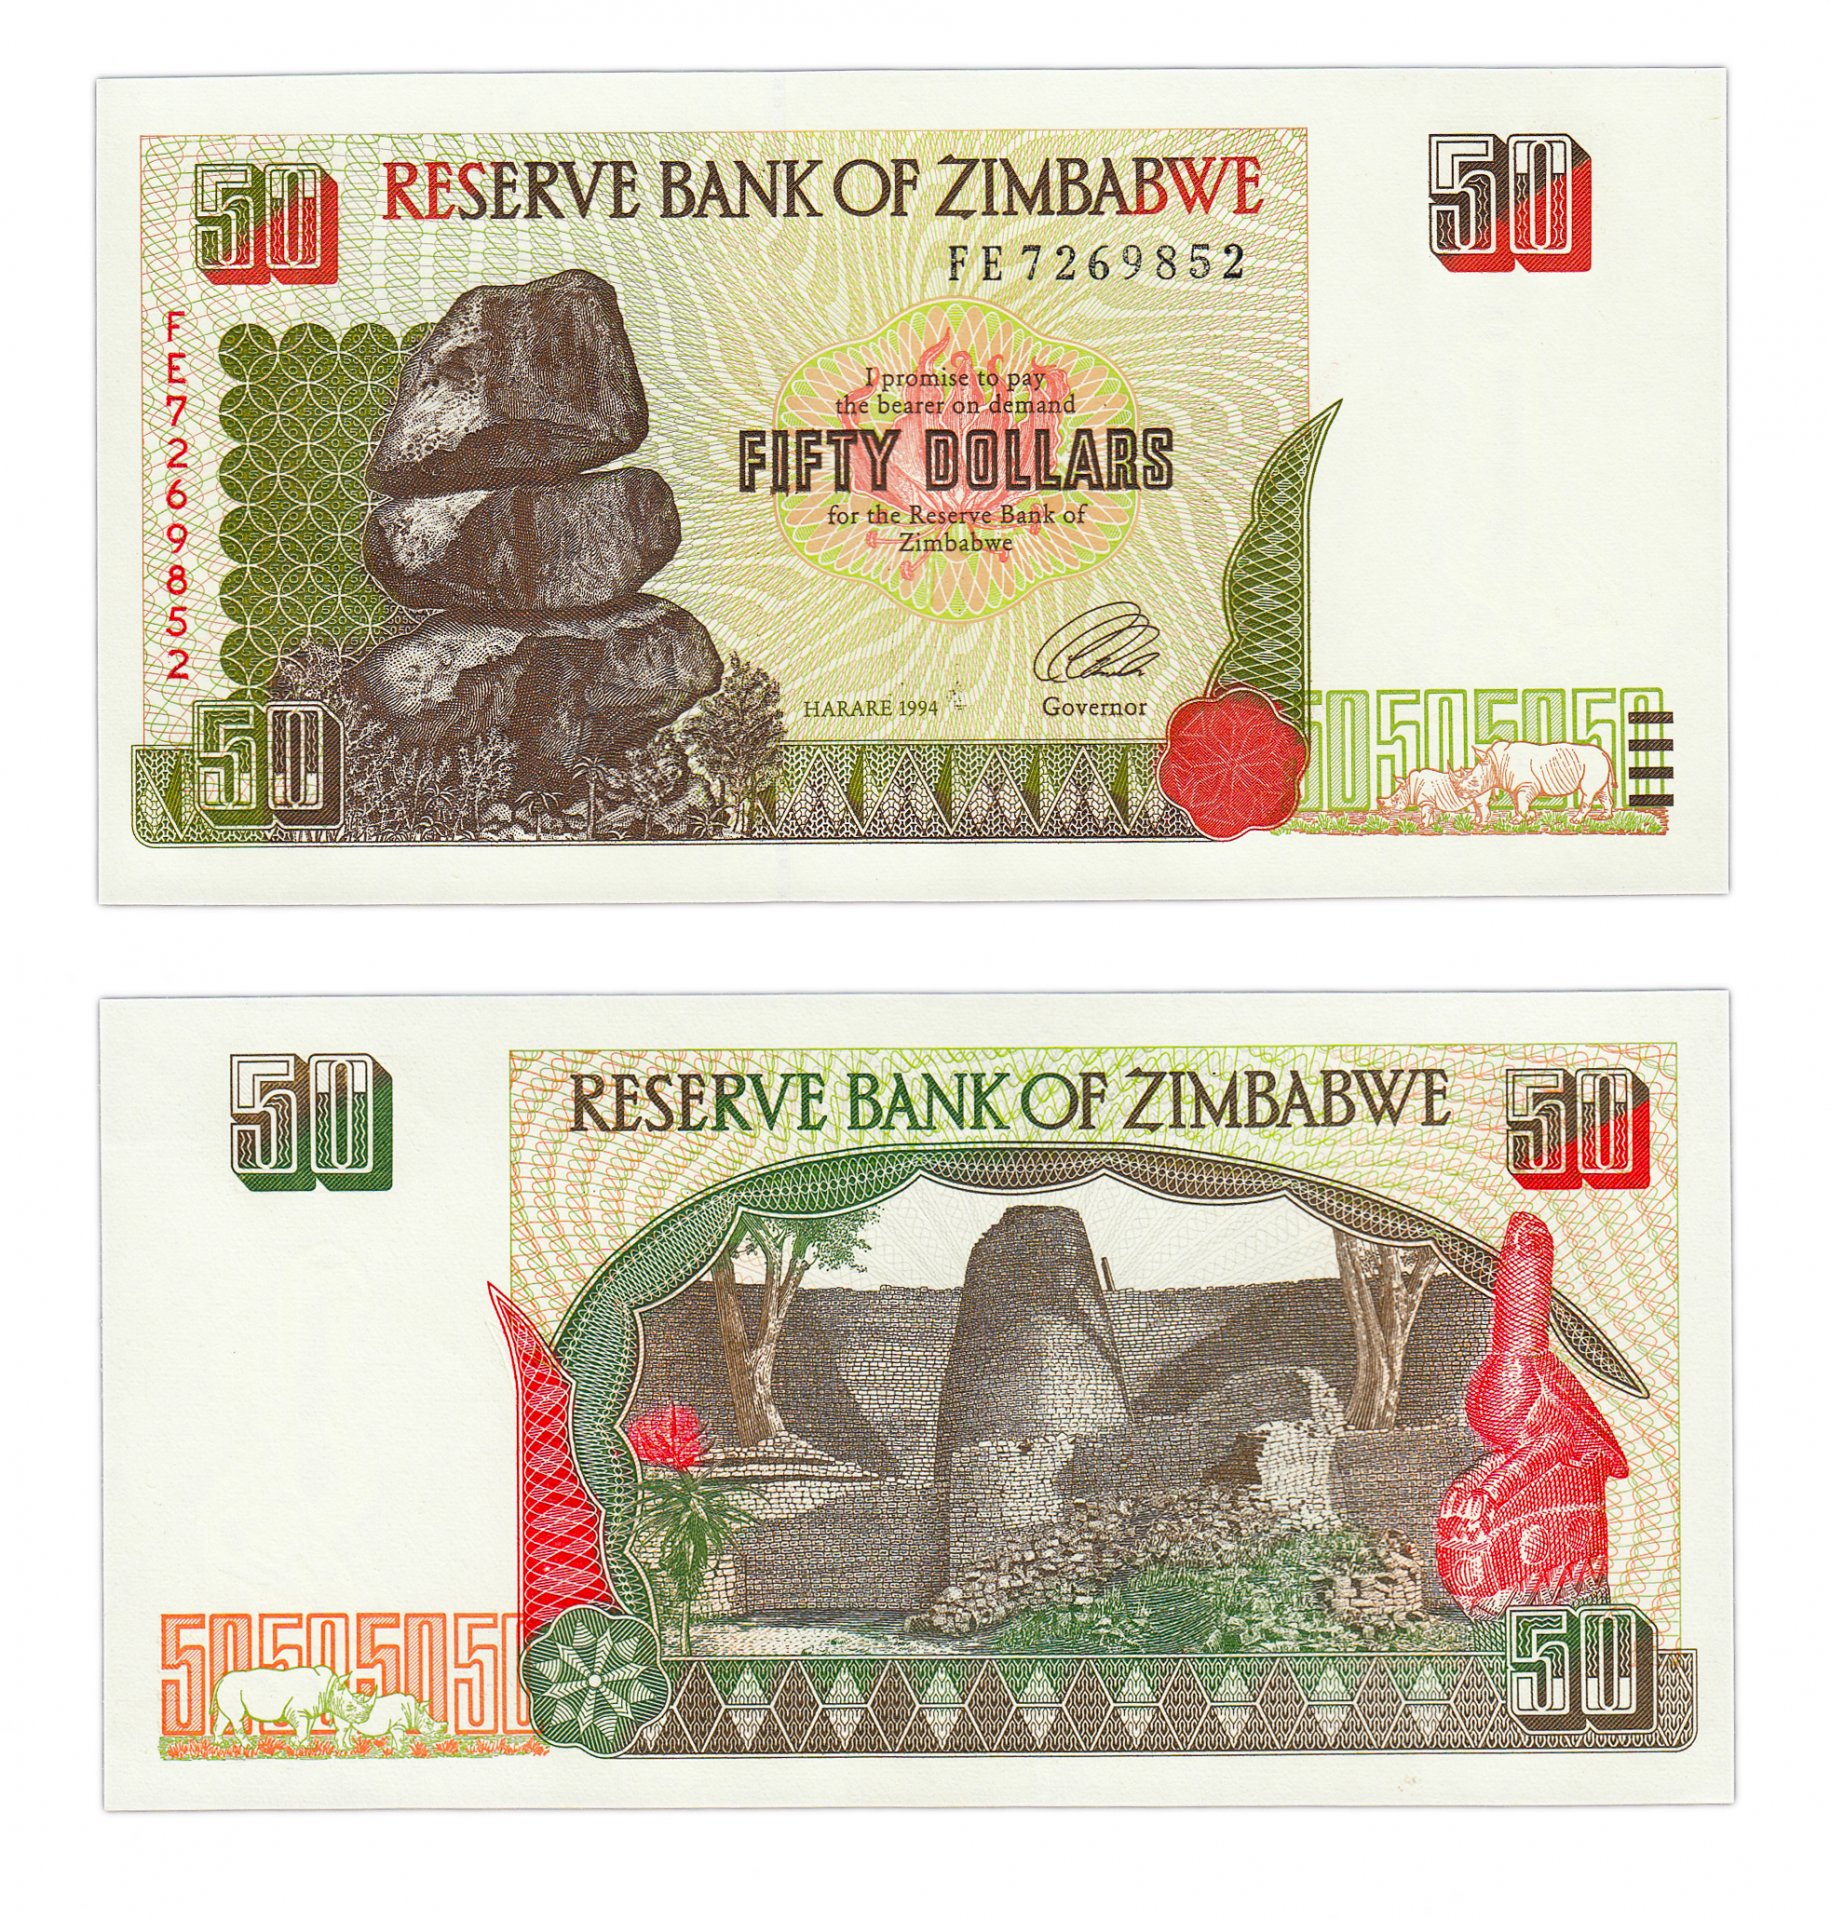 1994 долларов в рублях. Национальная валюта Зимбабве. Купюры Зимбабве 2008. Зимбабве 50 долларов 1994. Зимбабвийский доллар купюры.